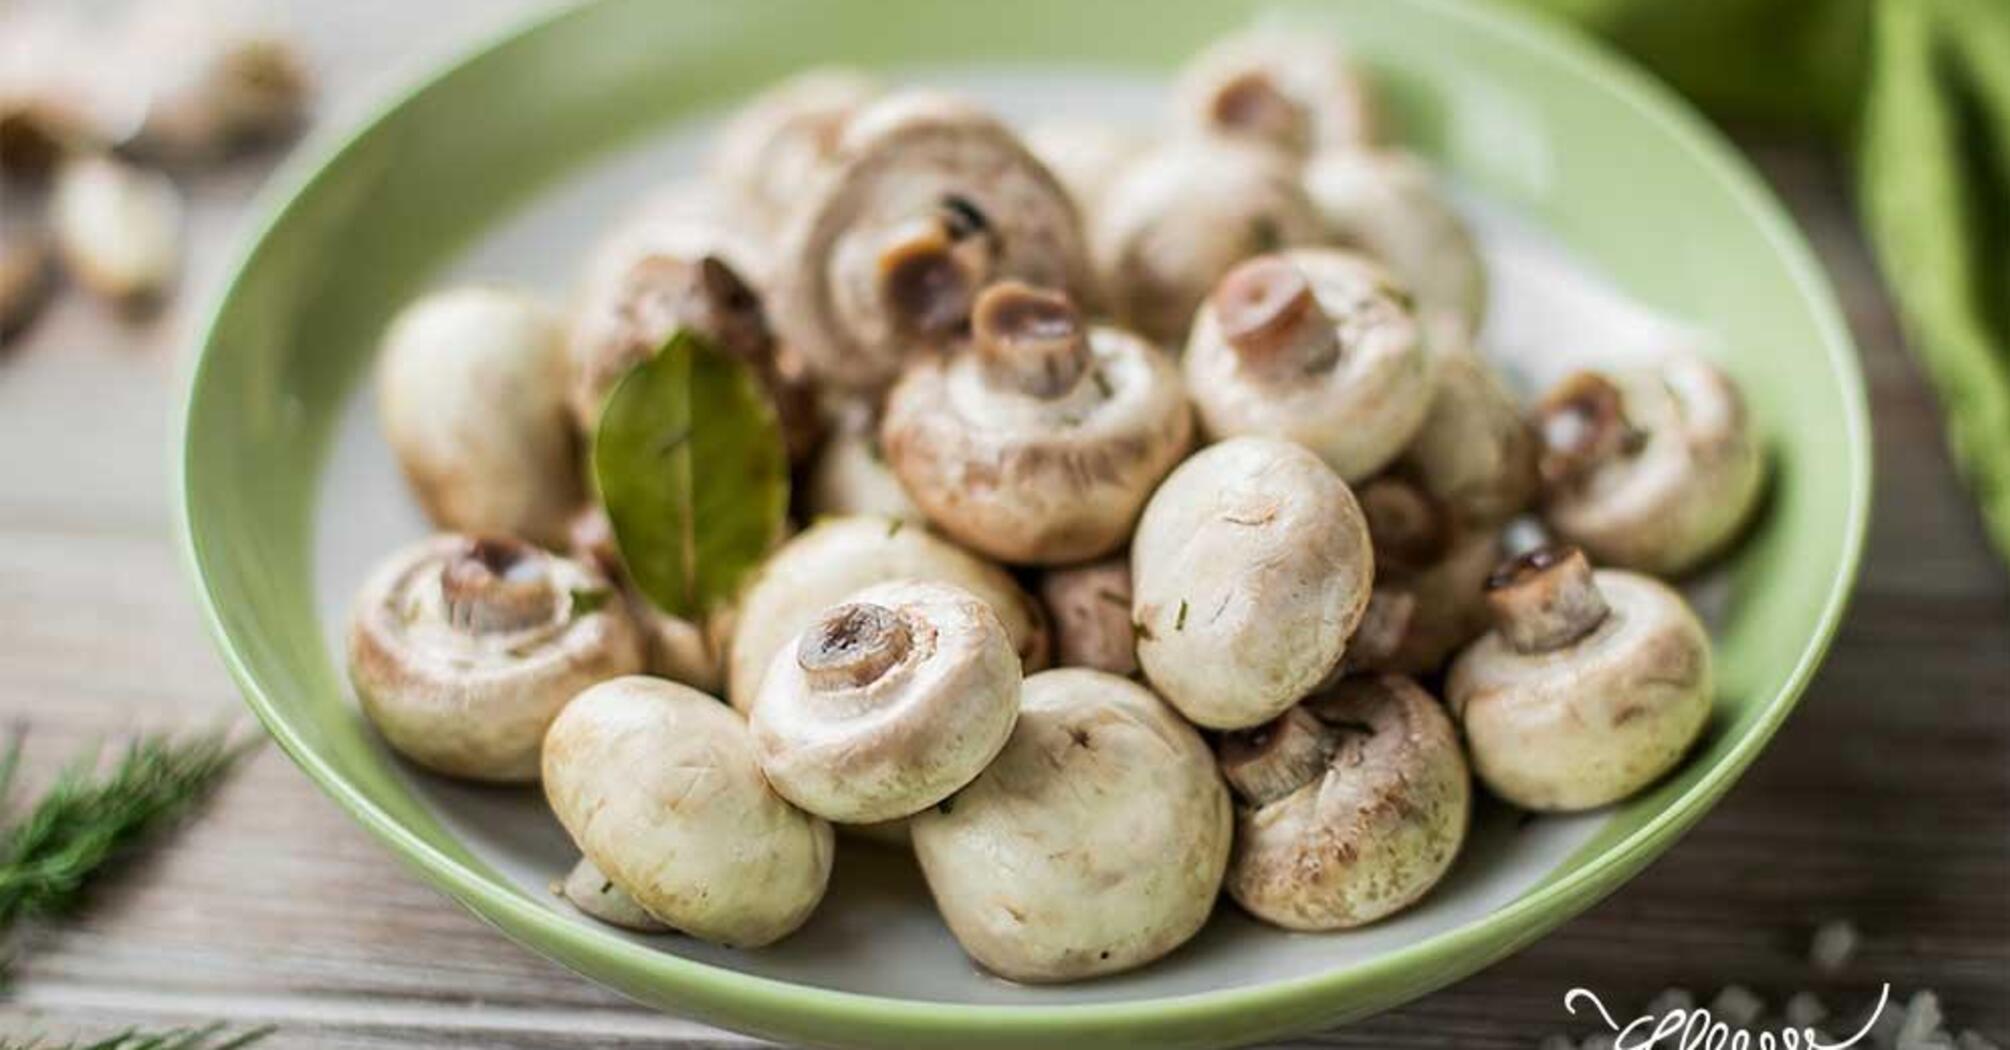 Recipe for mushrooms